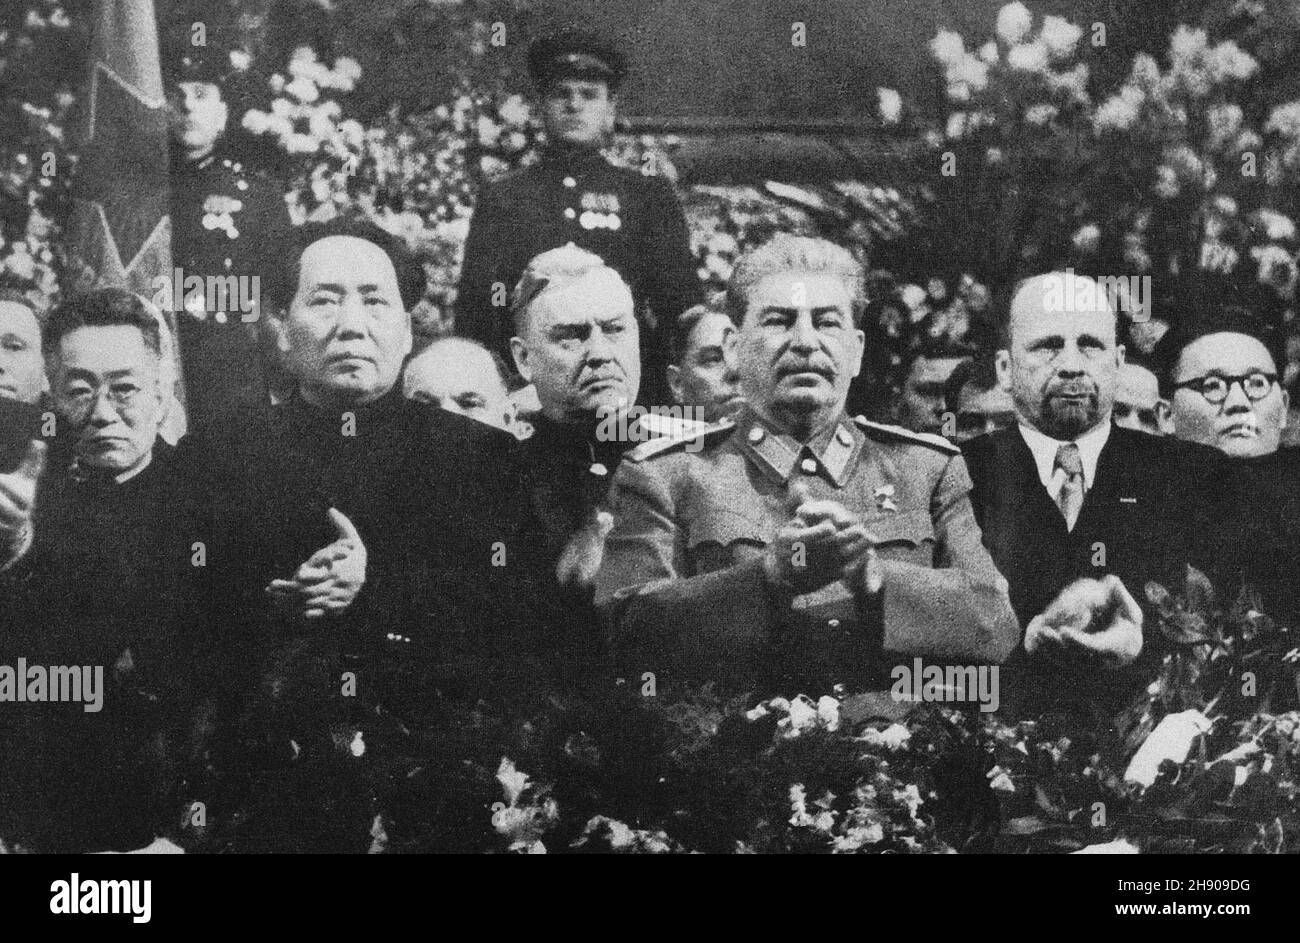 MOSCOU, RUSSIE - 21 décembre 1949 - Mao aux côtés de Staline lors d'une cérémonie organisée pour le 71e anniversaire de Staline à Moscou en décembre 1949.Entre les deux Banque D'Images